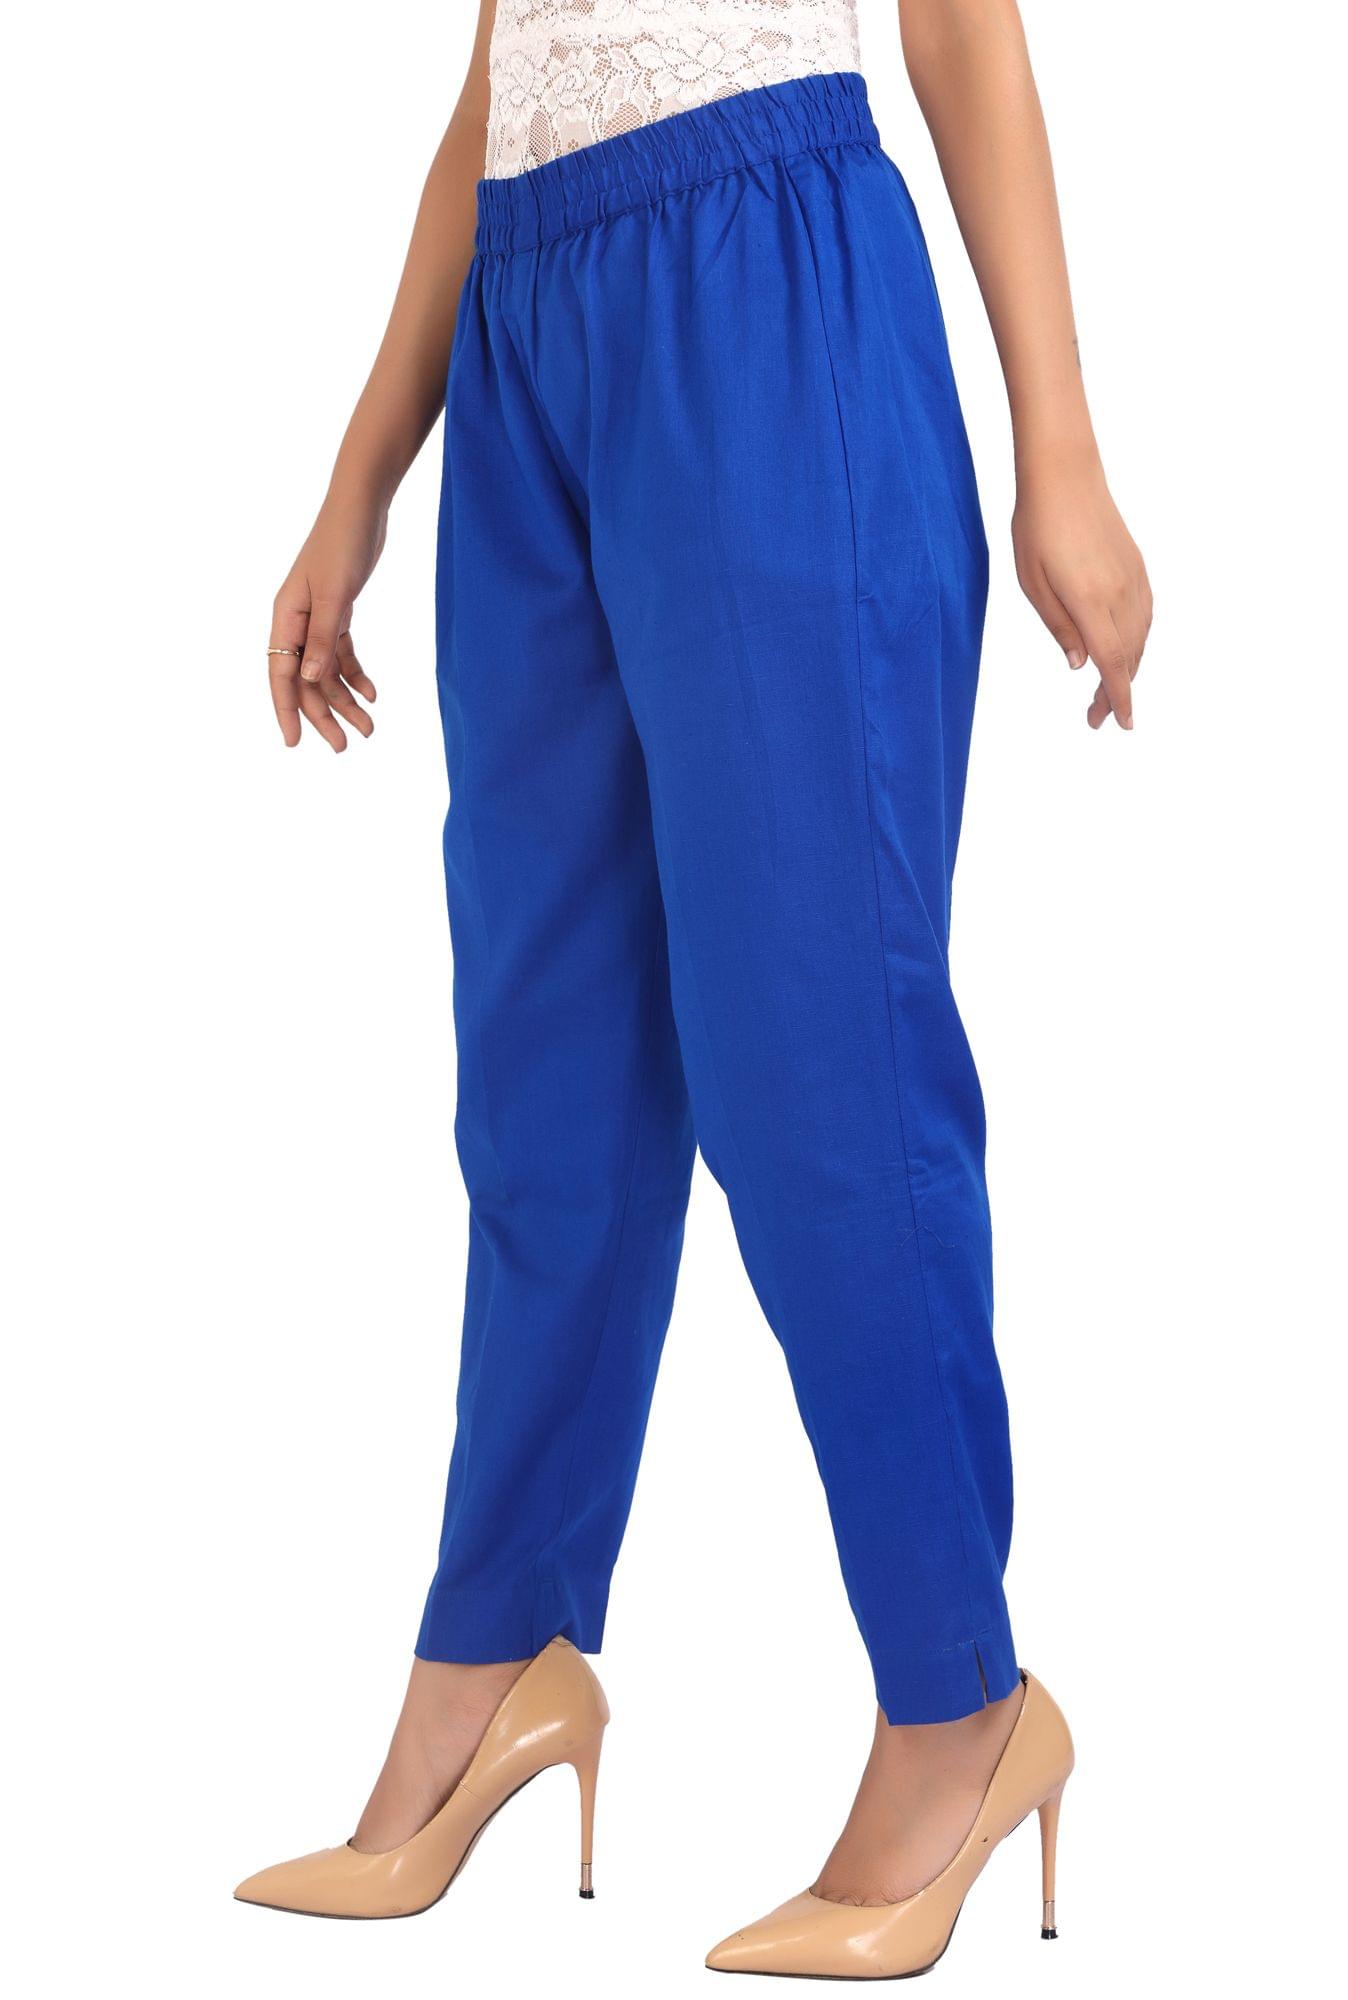 Women's Blue Cotton Pant